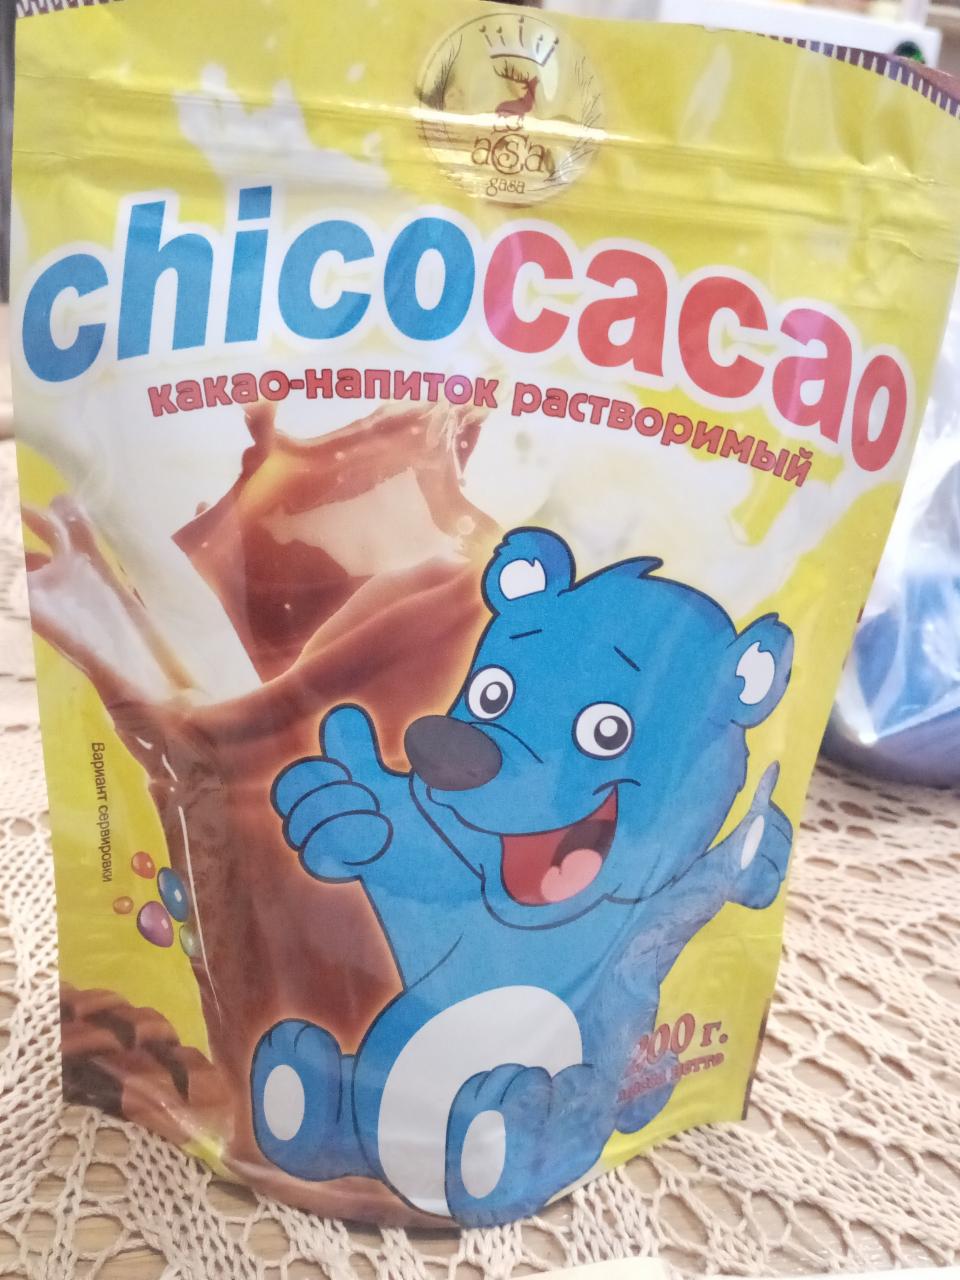 Фото - какао-напиток растворимый Chicocacao